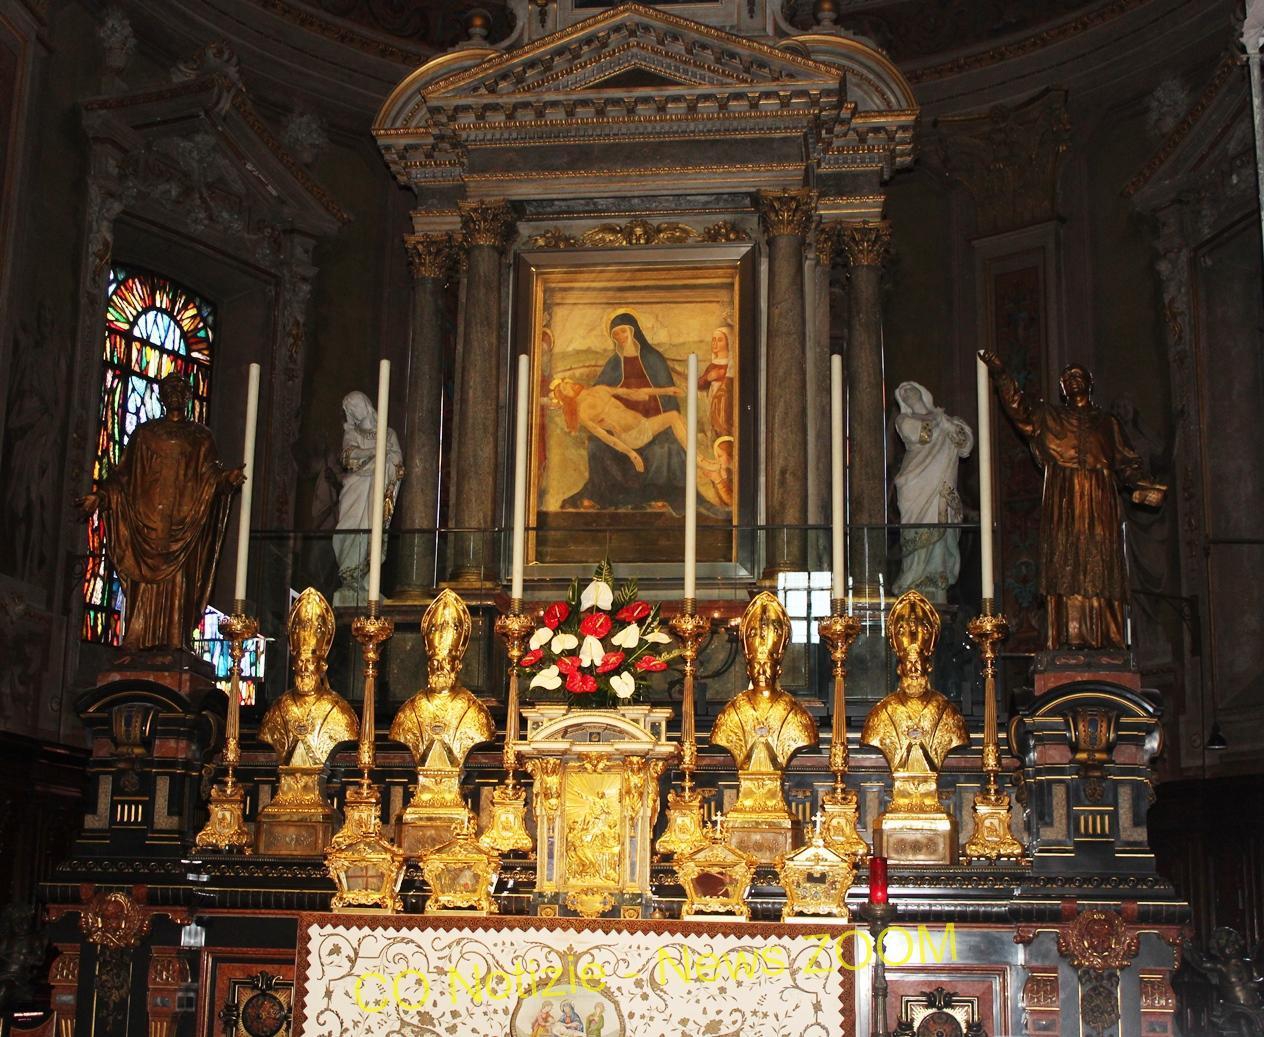 Santuario,rho. Il Santuario della Beata Vergine Addolorata in Rho presenta la Settimana Mariana - 08/09/2021